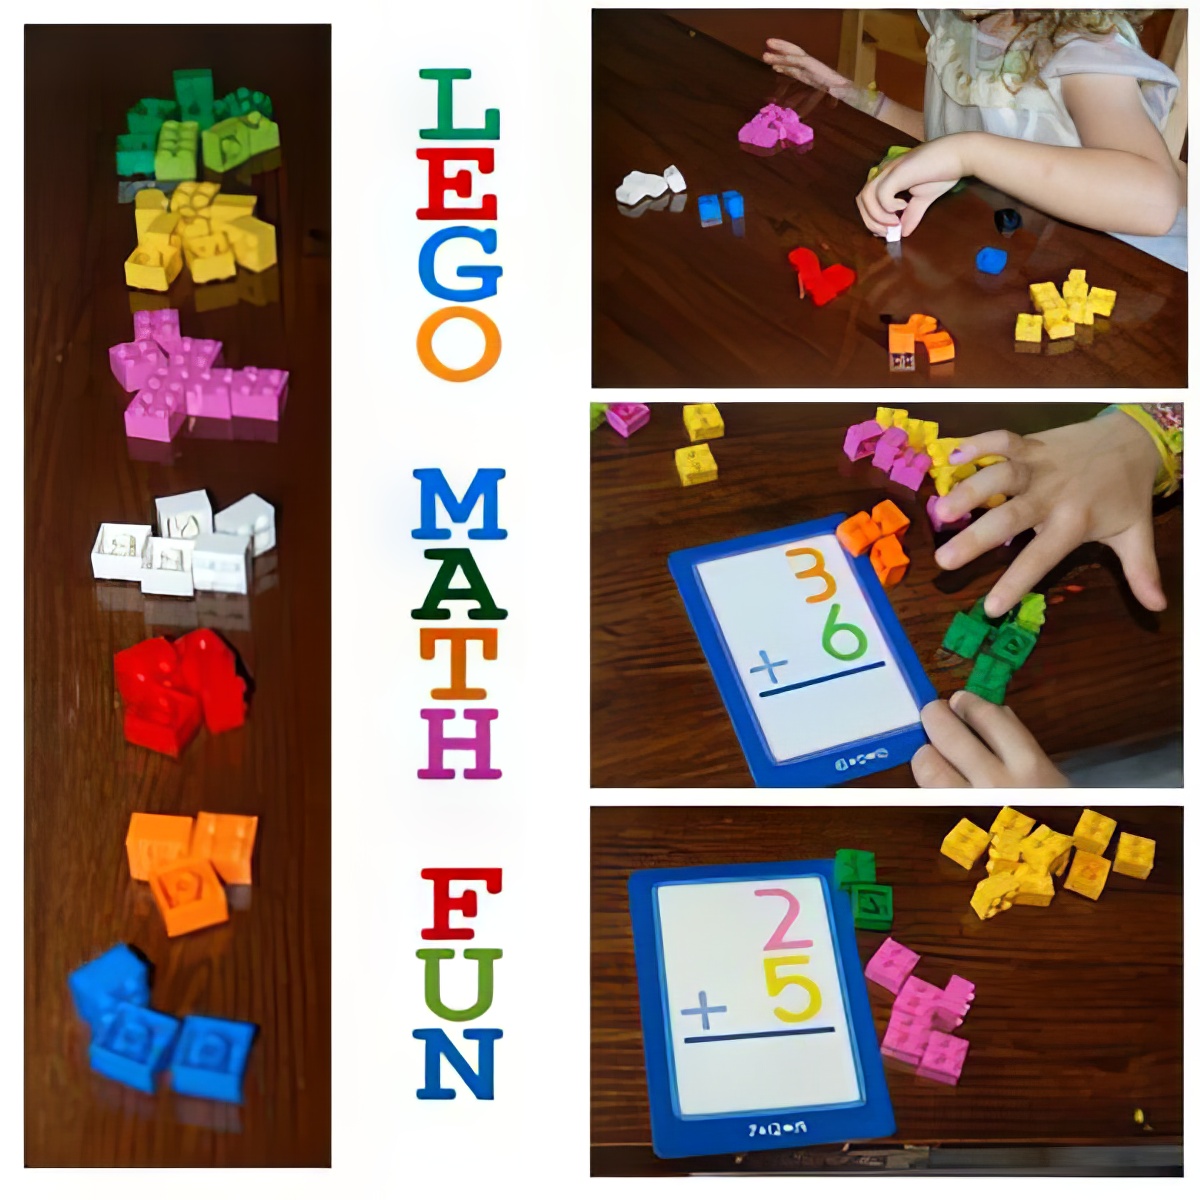 LEGO Math Fun, creative LEGO Math learning, colorful LEGO Math